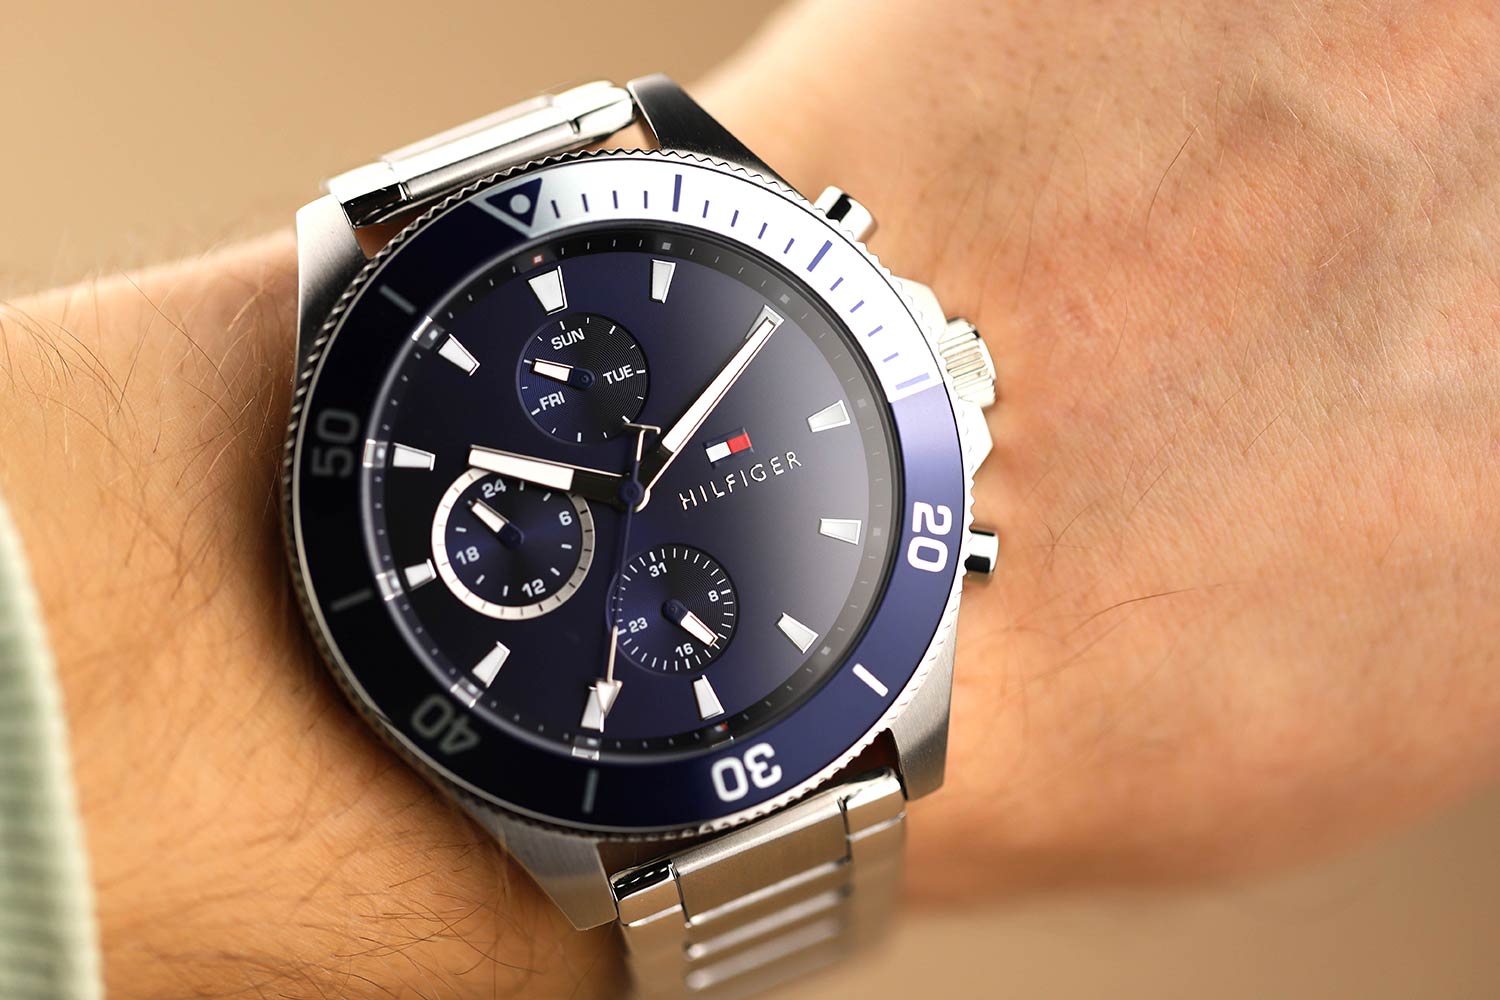 Наручные часы Tommy фото, инструкция, цене, описание купить лучшей по Hilfiger 1791917 AllTime.ru характеристики, — интернет-магазине в